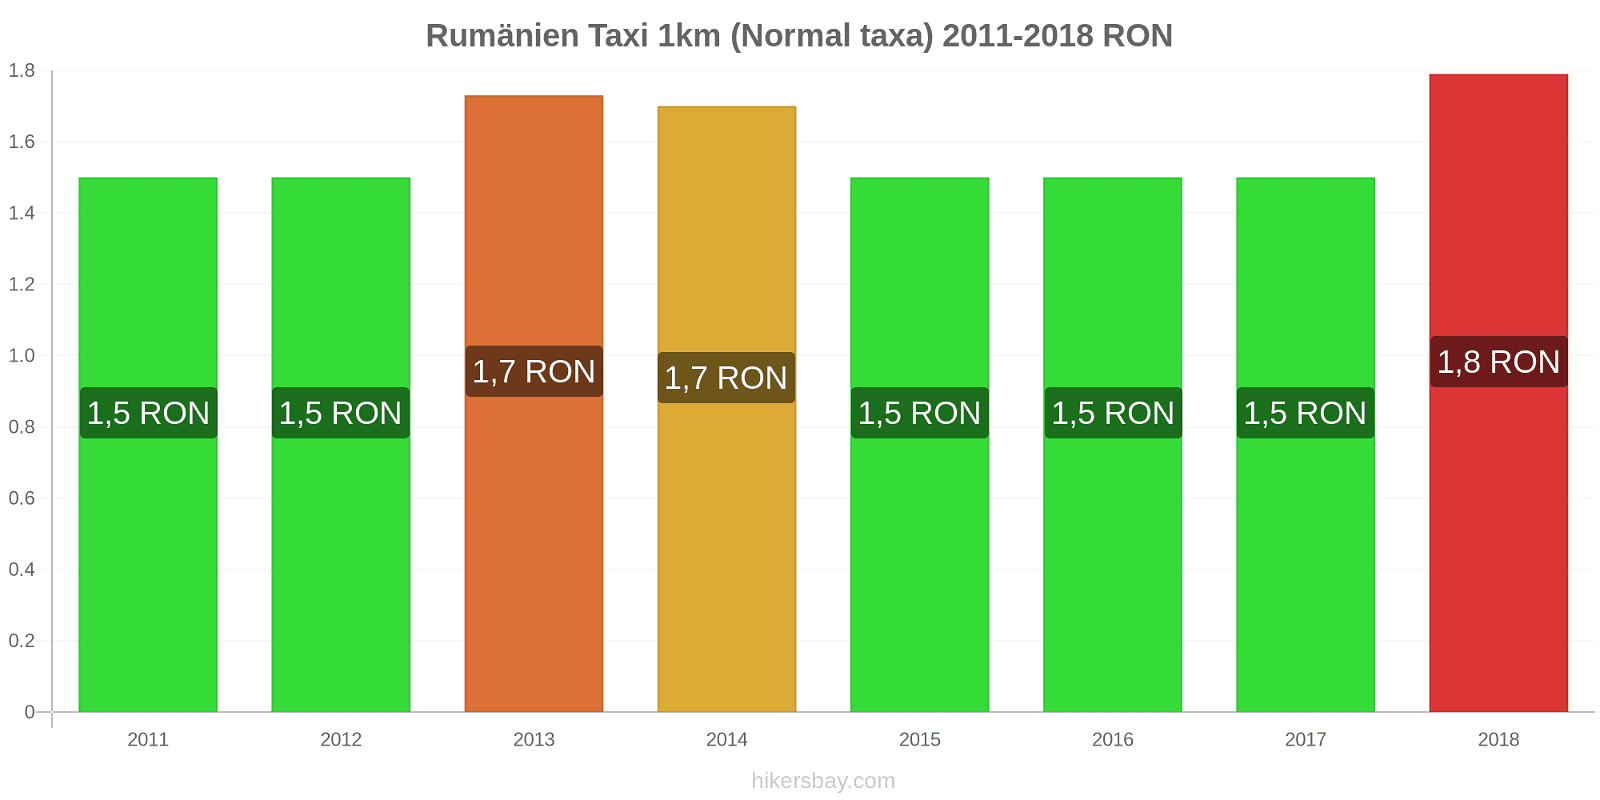 Rumänien prisändringar Taxi 1km (Normal taxa) hikersbay.com